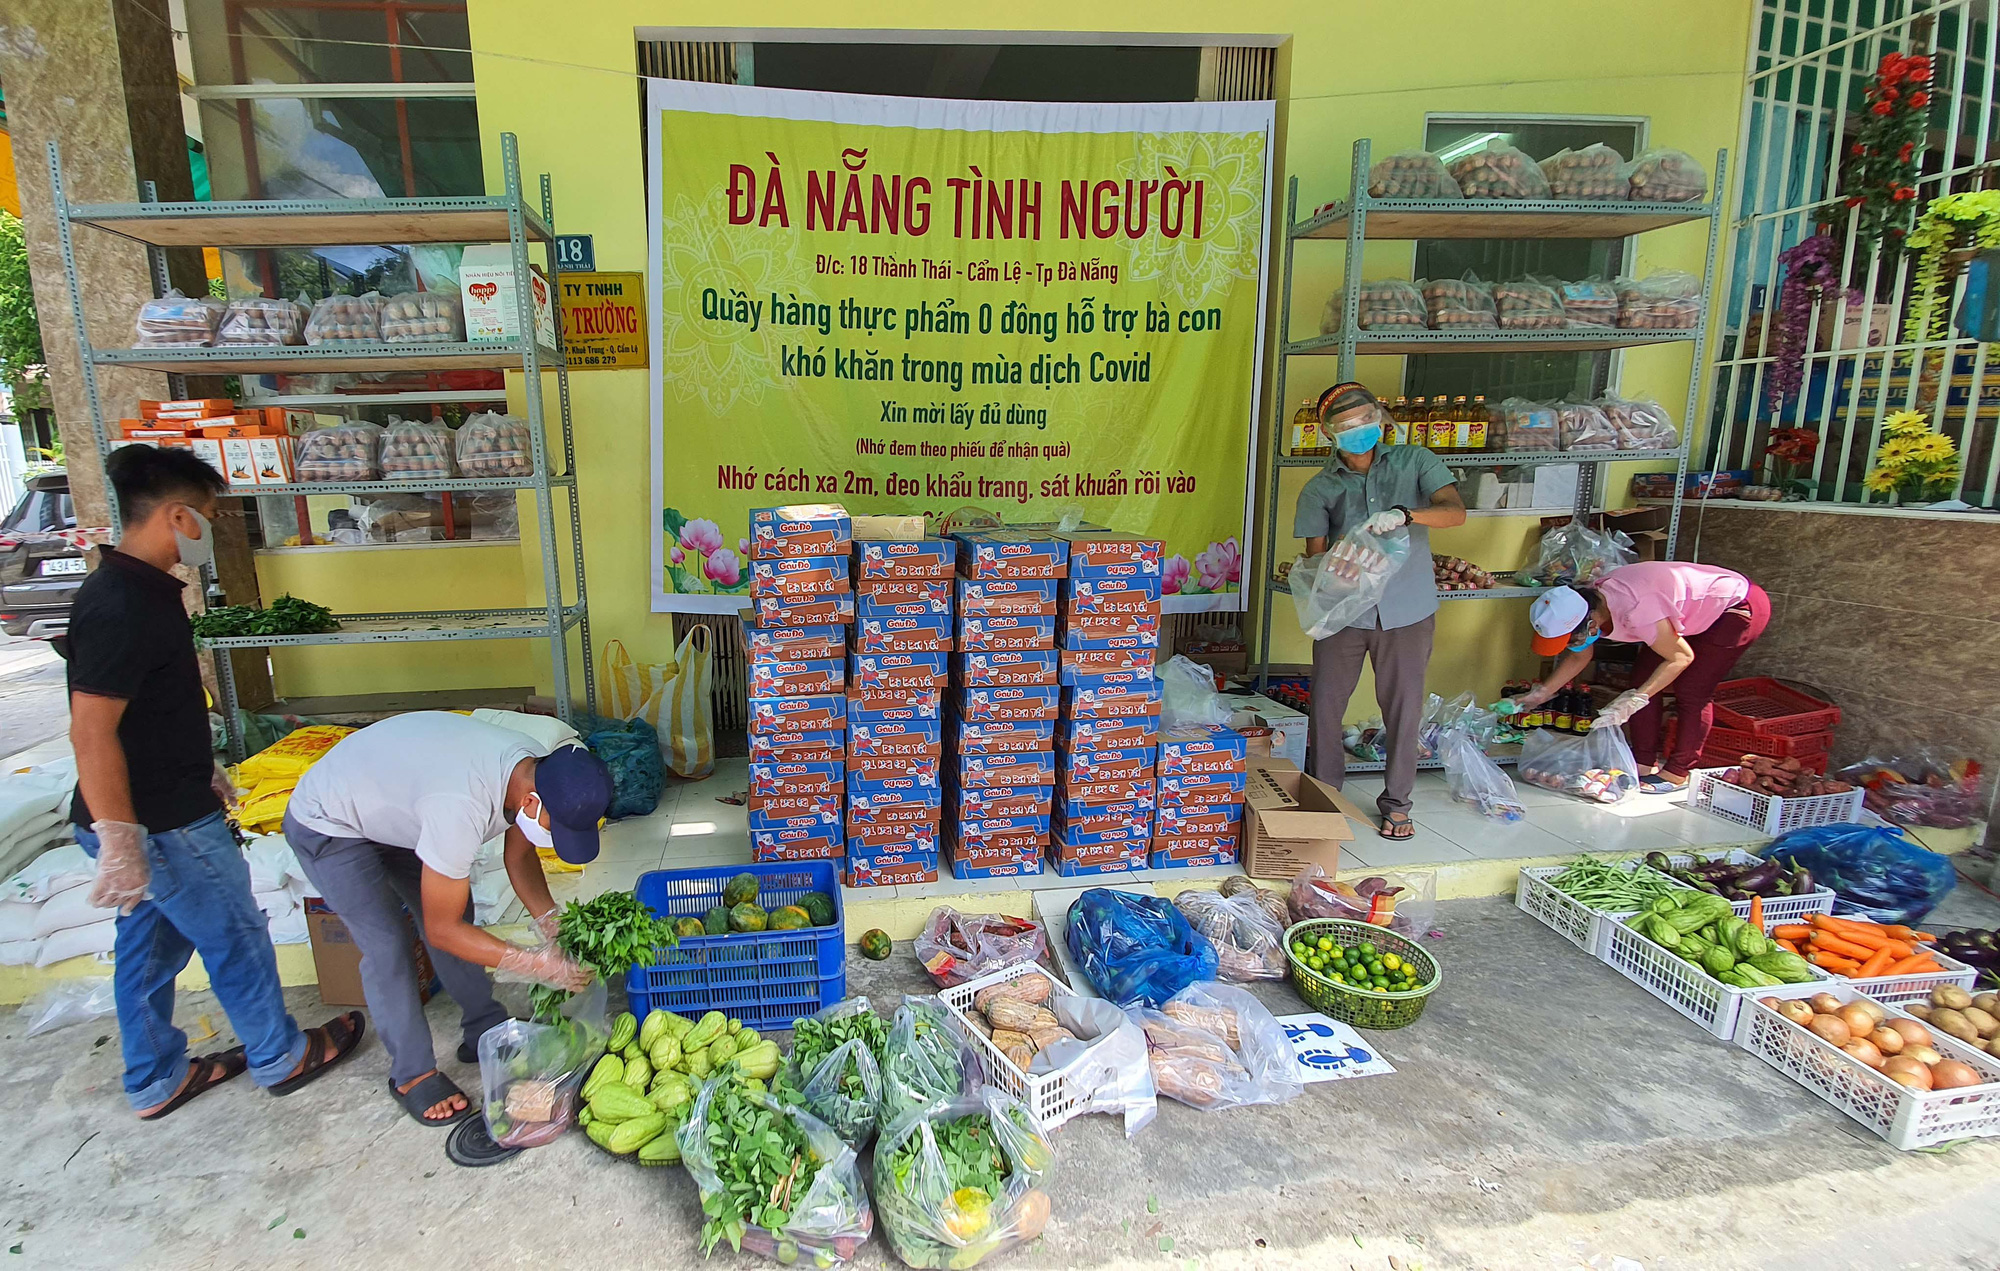 Ấm lòng “quầy hàng thực phẩm 0 đồng” ở Đà Nẵng